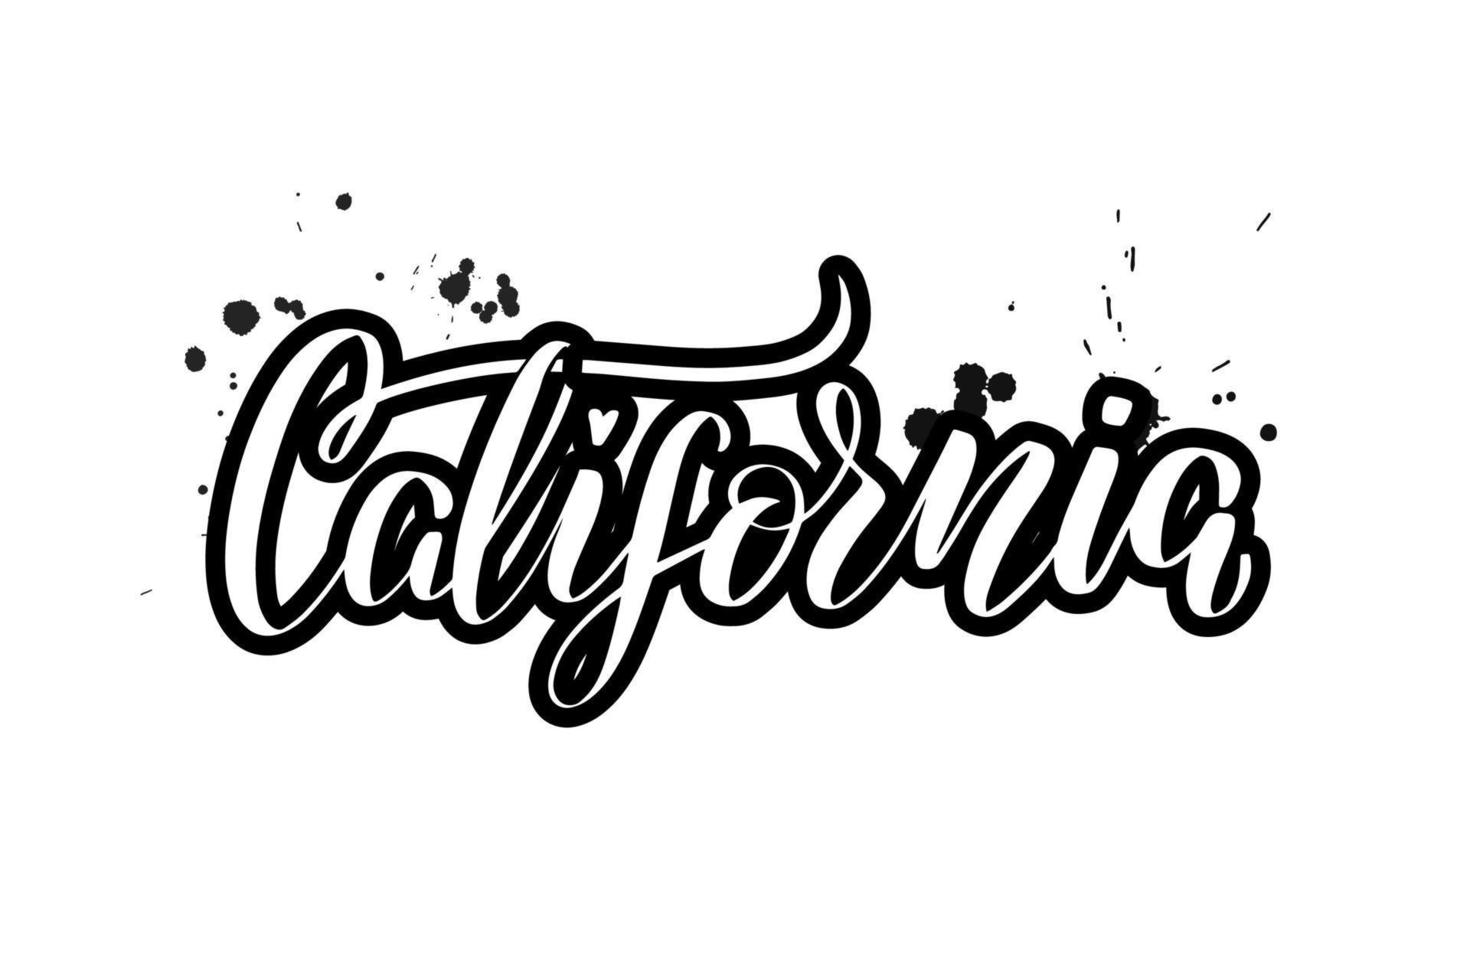 inspirierende handgeschriebene pinselbeschriftung kalifornien. vektorkalligraphieillustration lokalisiert auf weißem hintergrund. typografie für banner, abzeichen, postkarten, t-shirts, drucke, poster. vektor